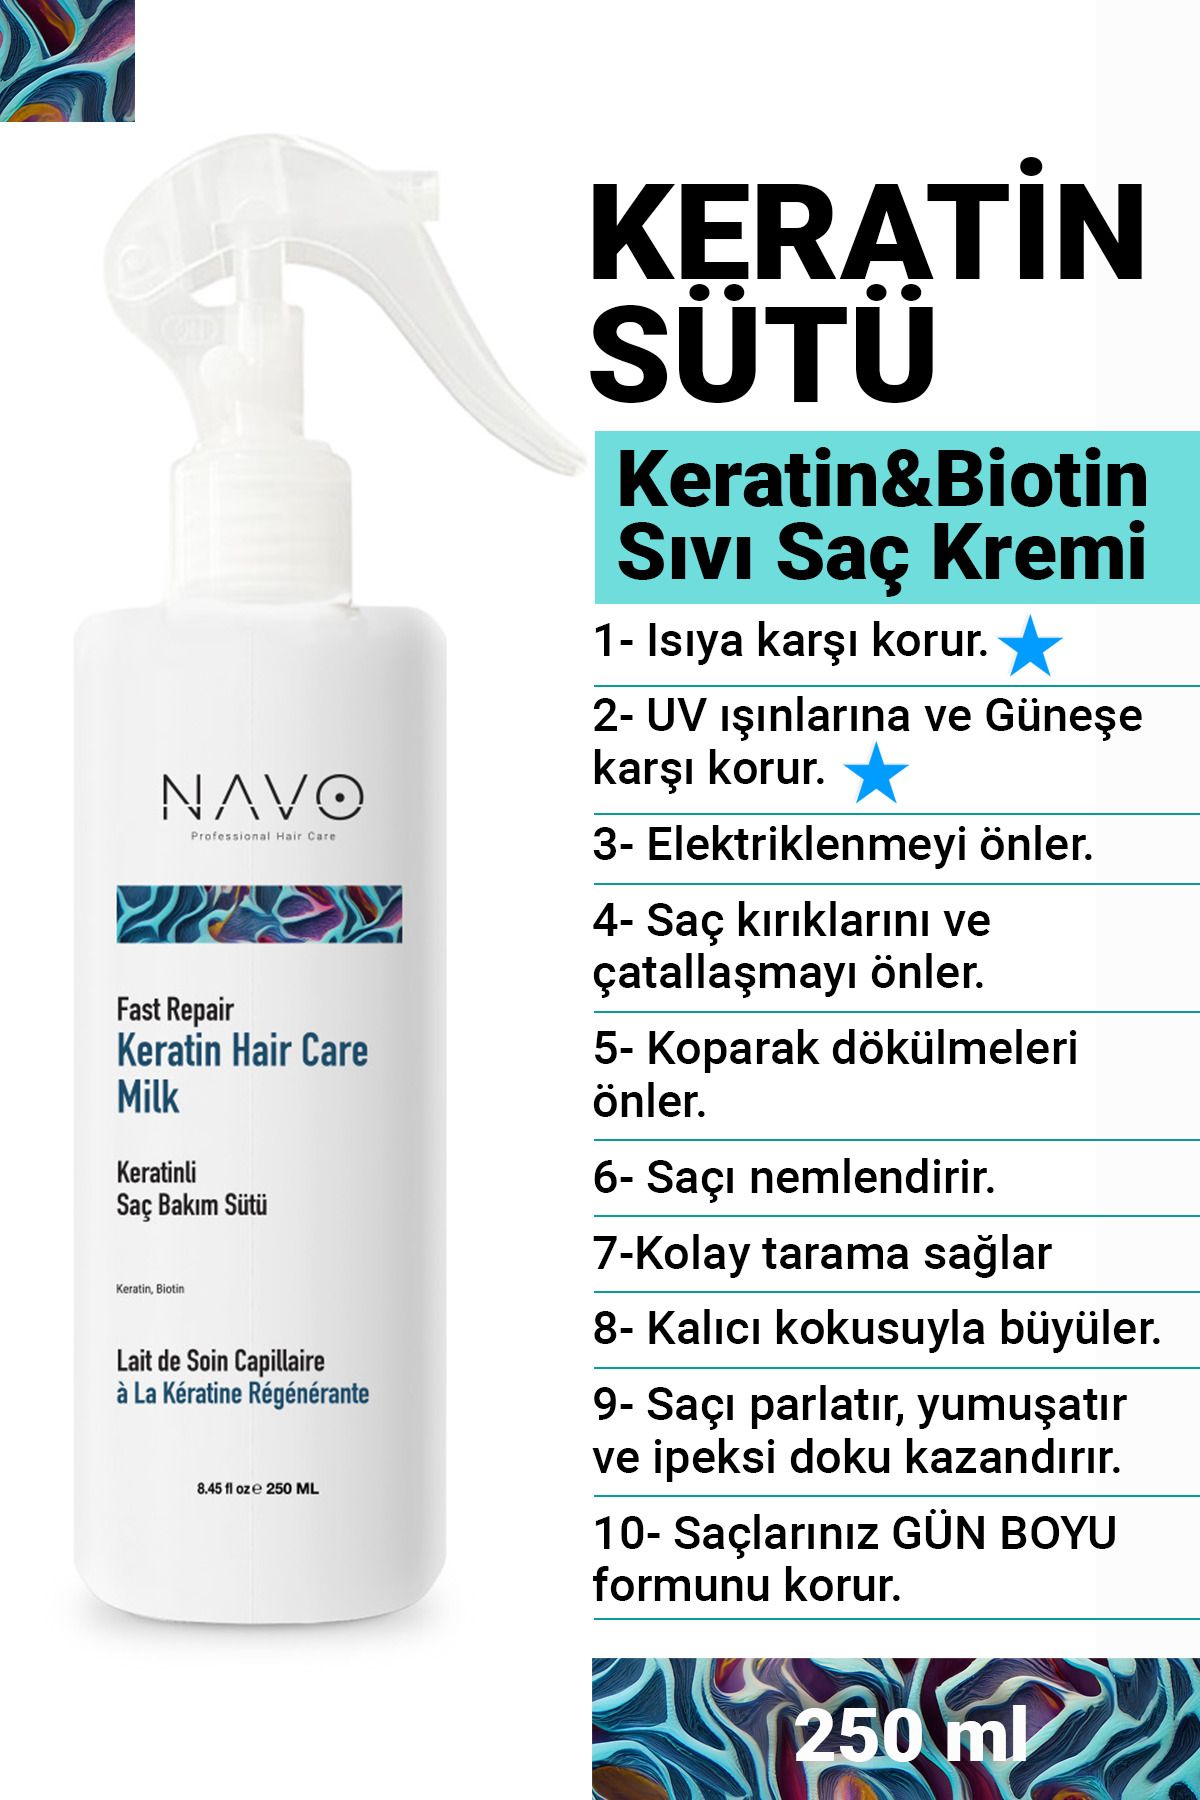 NAVO PROFESSIONAL HAIR CARE Keratin Biotin Hızlı Onarıcı Ve Dökülme Önleyici Saç Bakım Sütü / Sıvı Saç Kremi 250ml